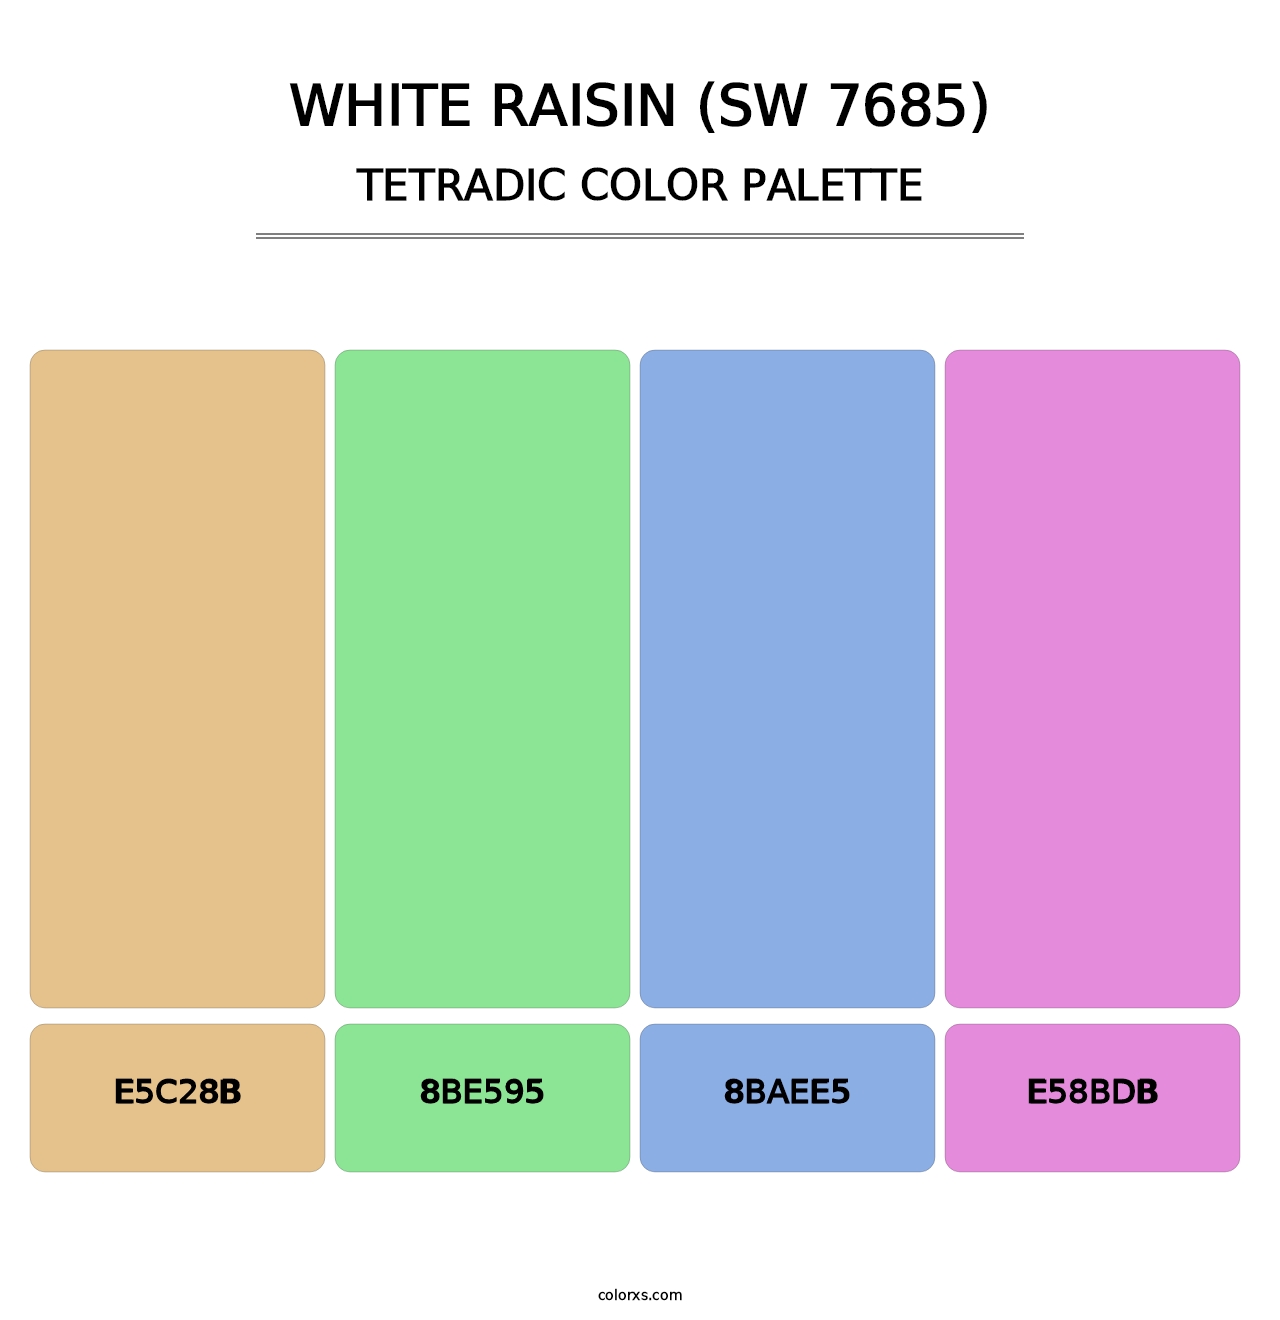 White Raisin (SW 7685) - Tetradic Color Palette